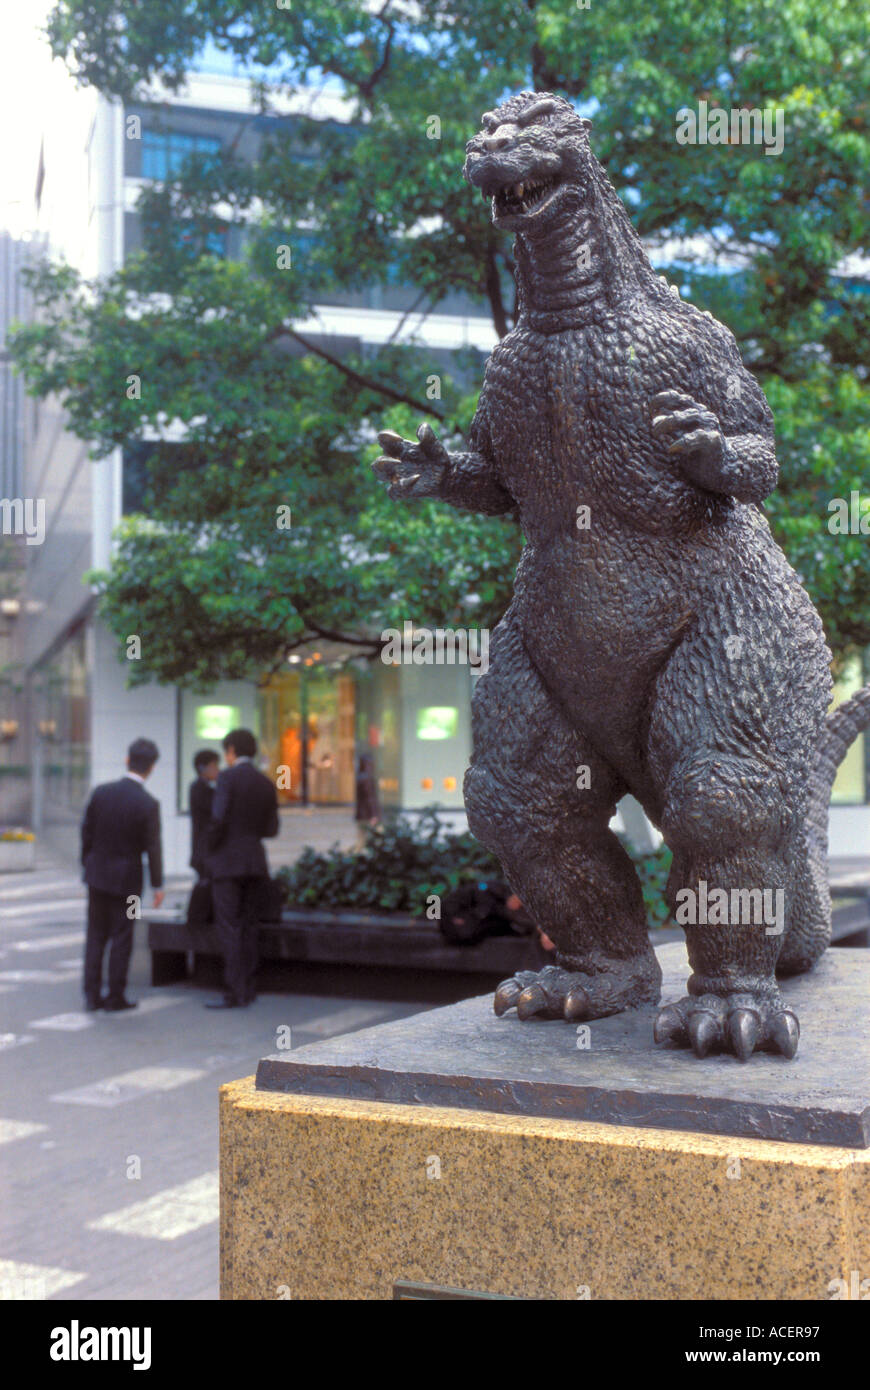 Estatua de bronce de Godzilla mirando a dos hombres de negocios en un parque tomando un descanso en el distrito de Yurakucho de Tokyo. Foto de stock